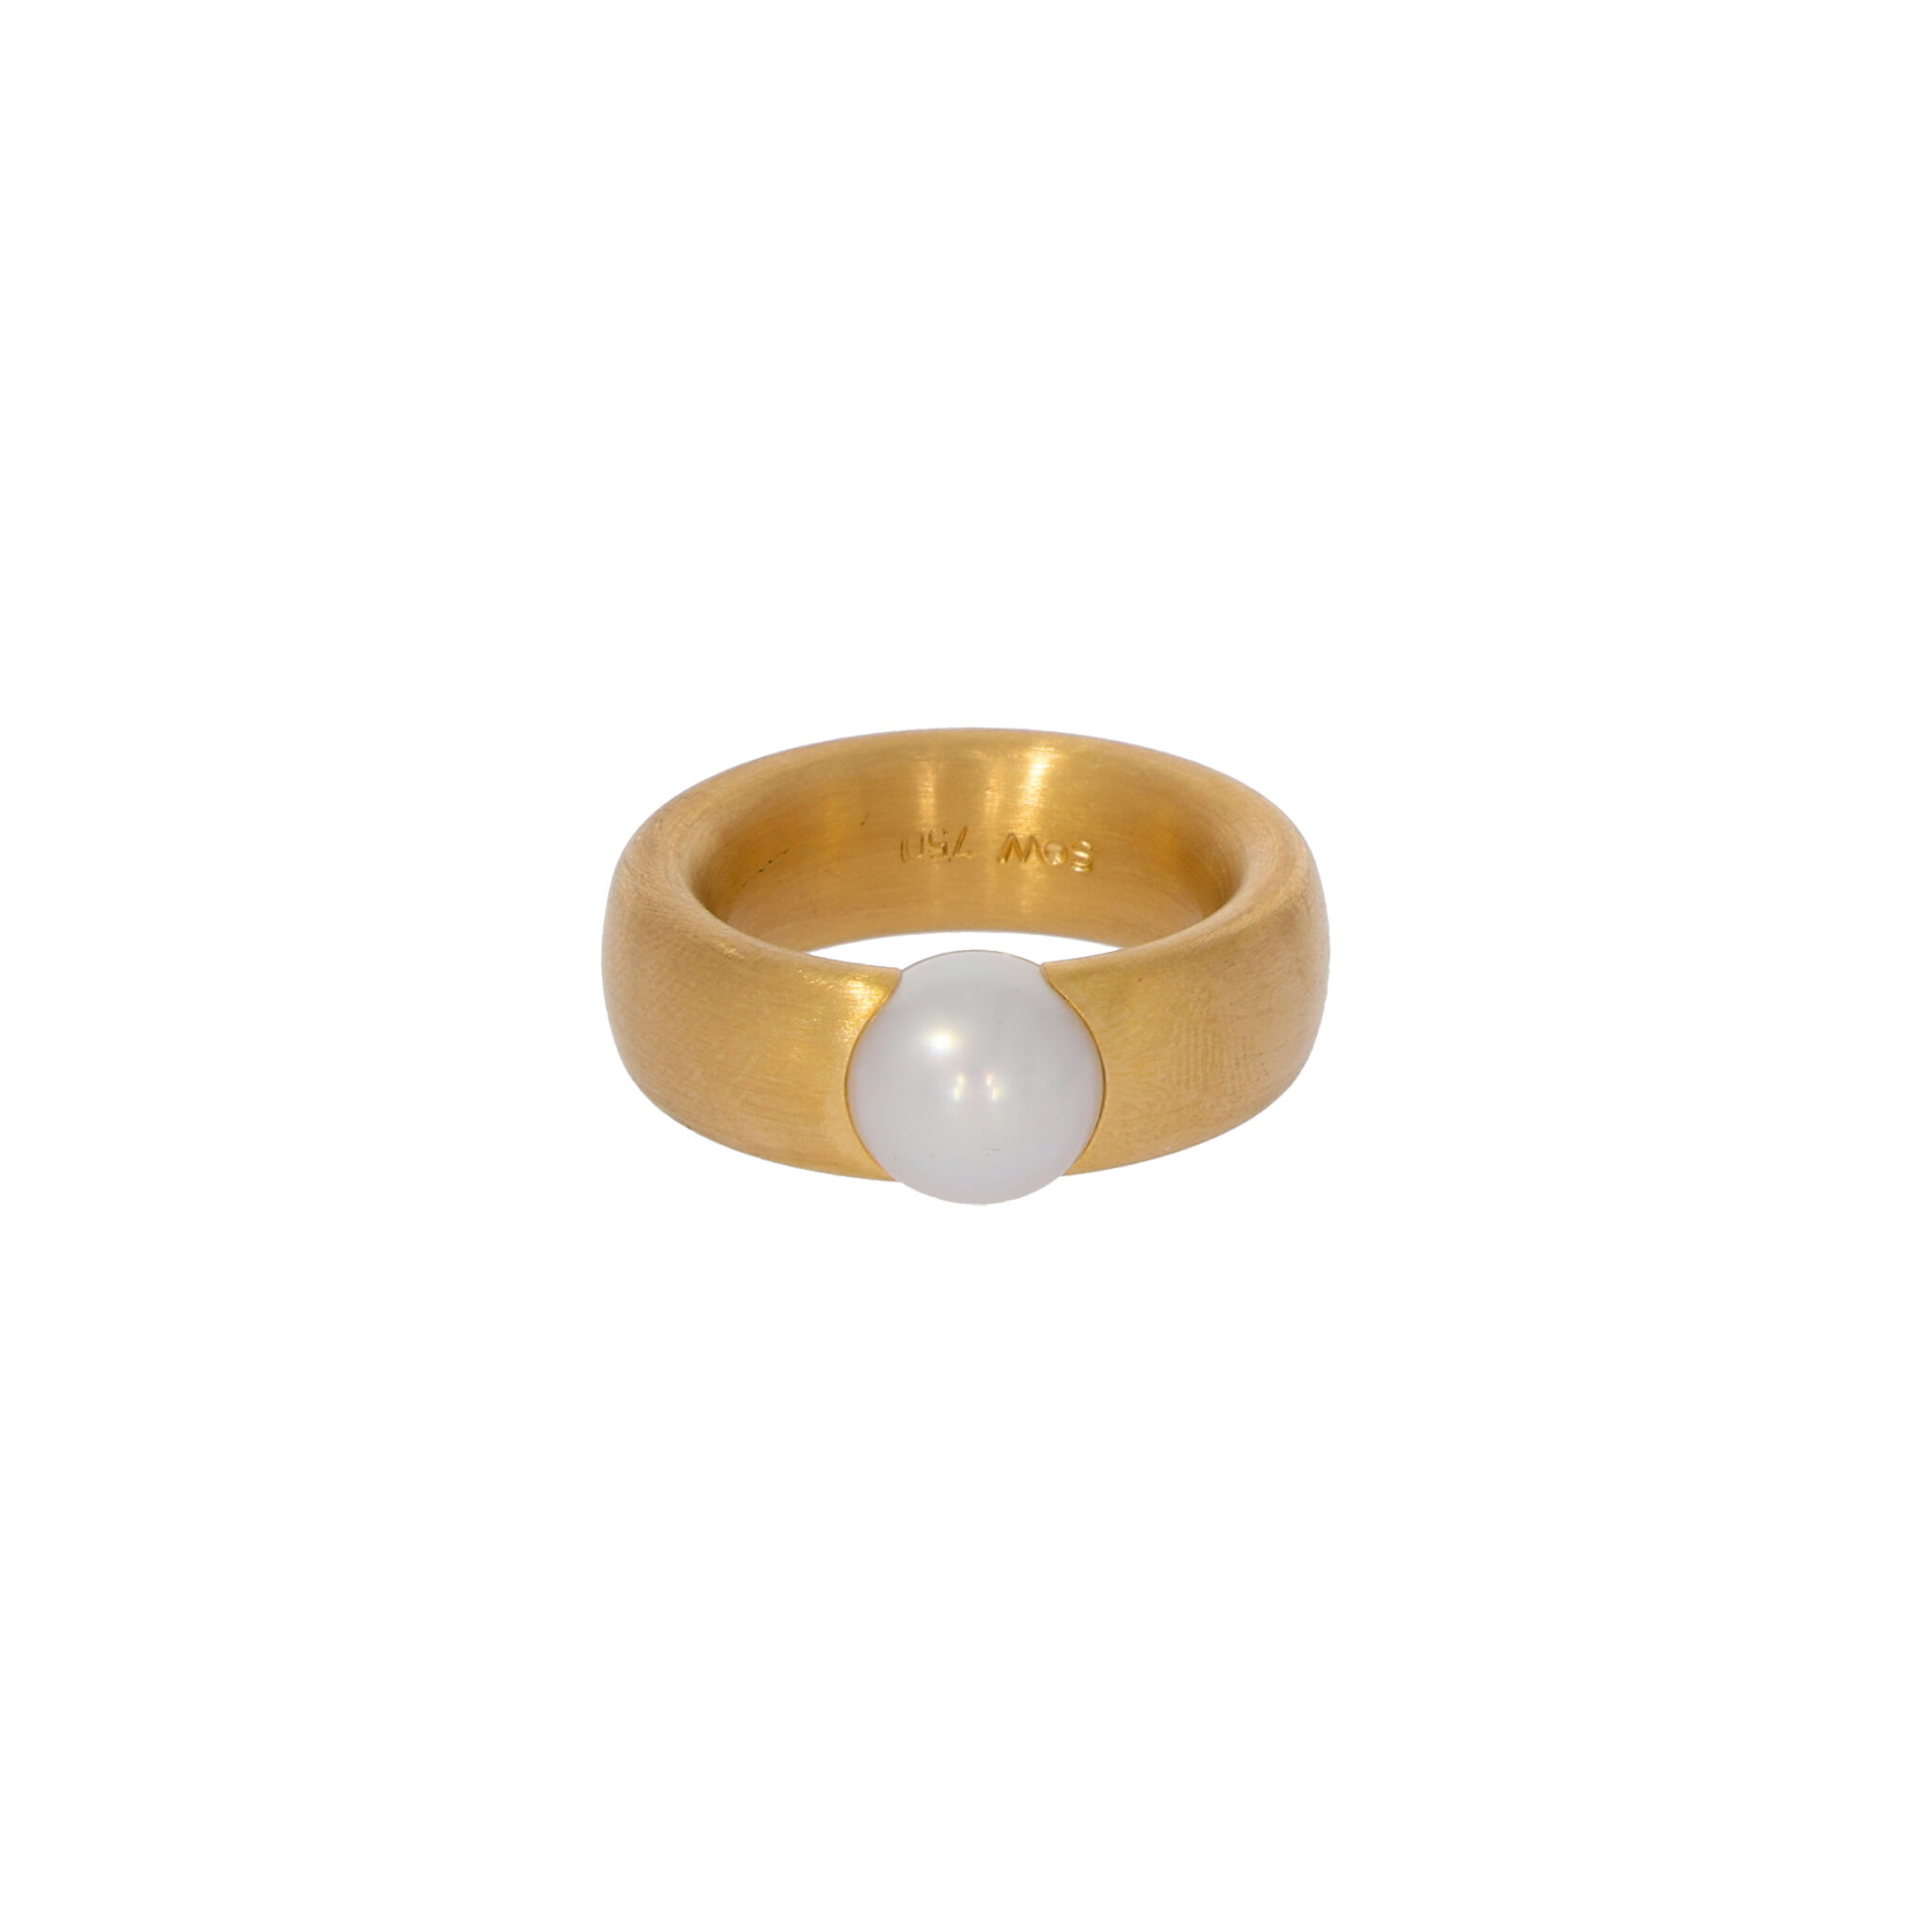 Perlen Ring Gr.53 Gelbgold 750 / 18K